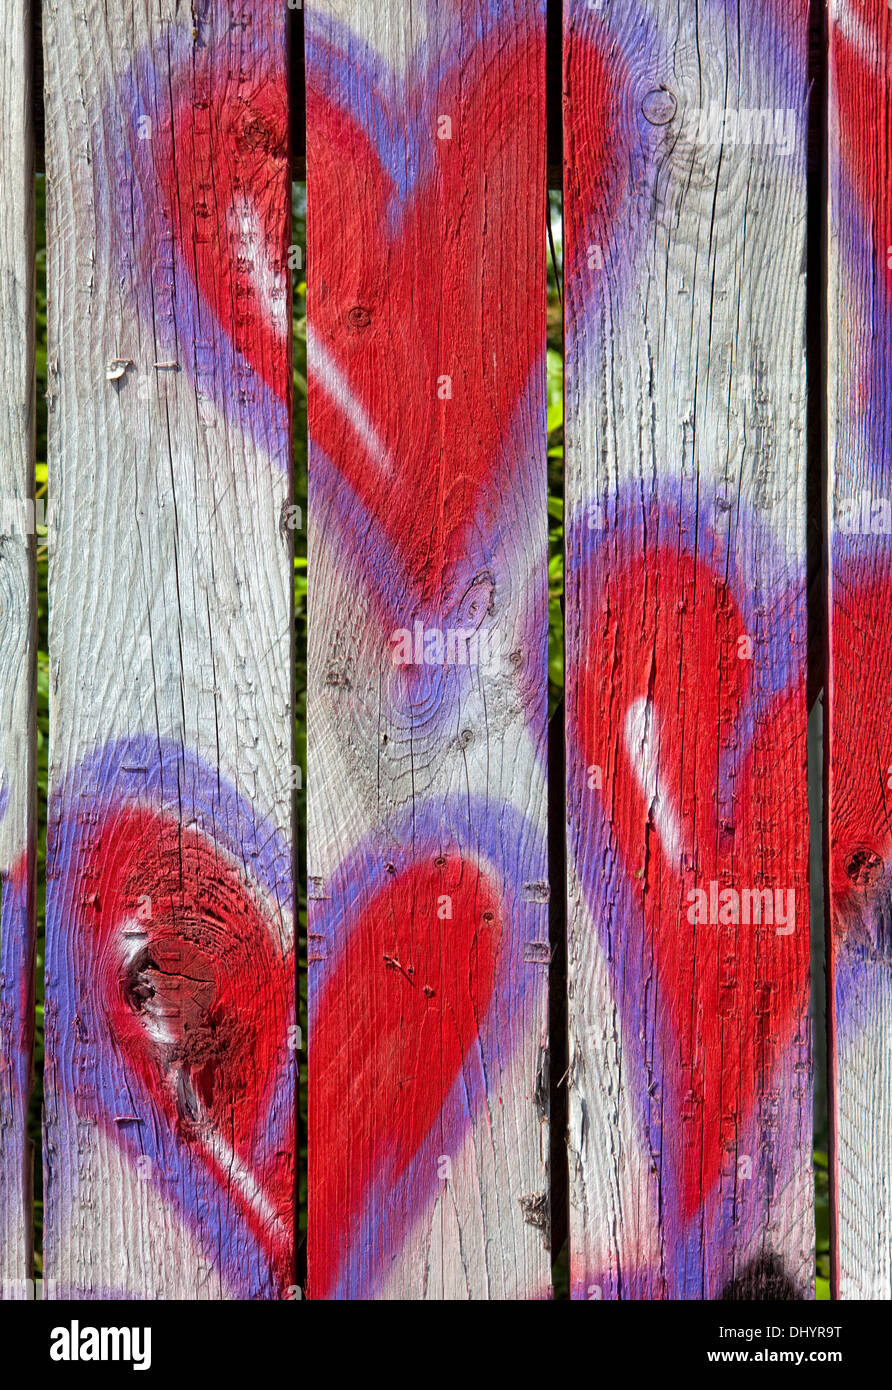 Coeurs rouges peints sur une clôture, graffiti, Germany, Europe Banque D'Images